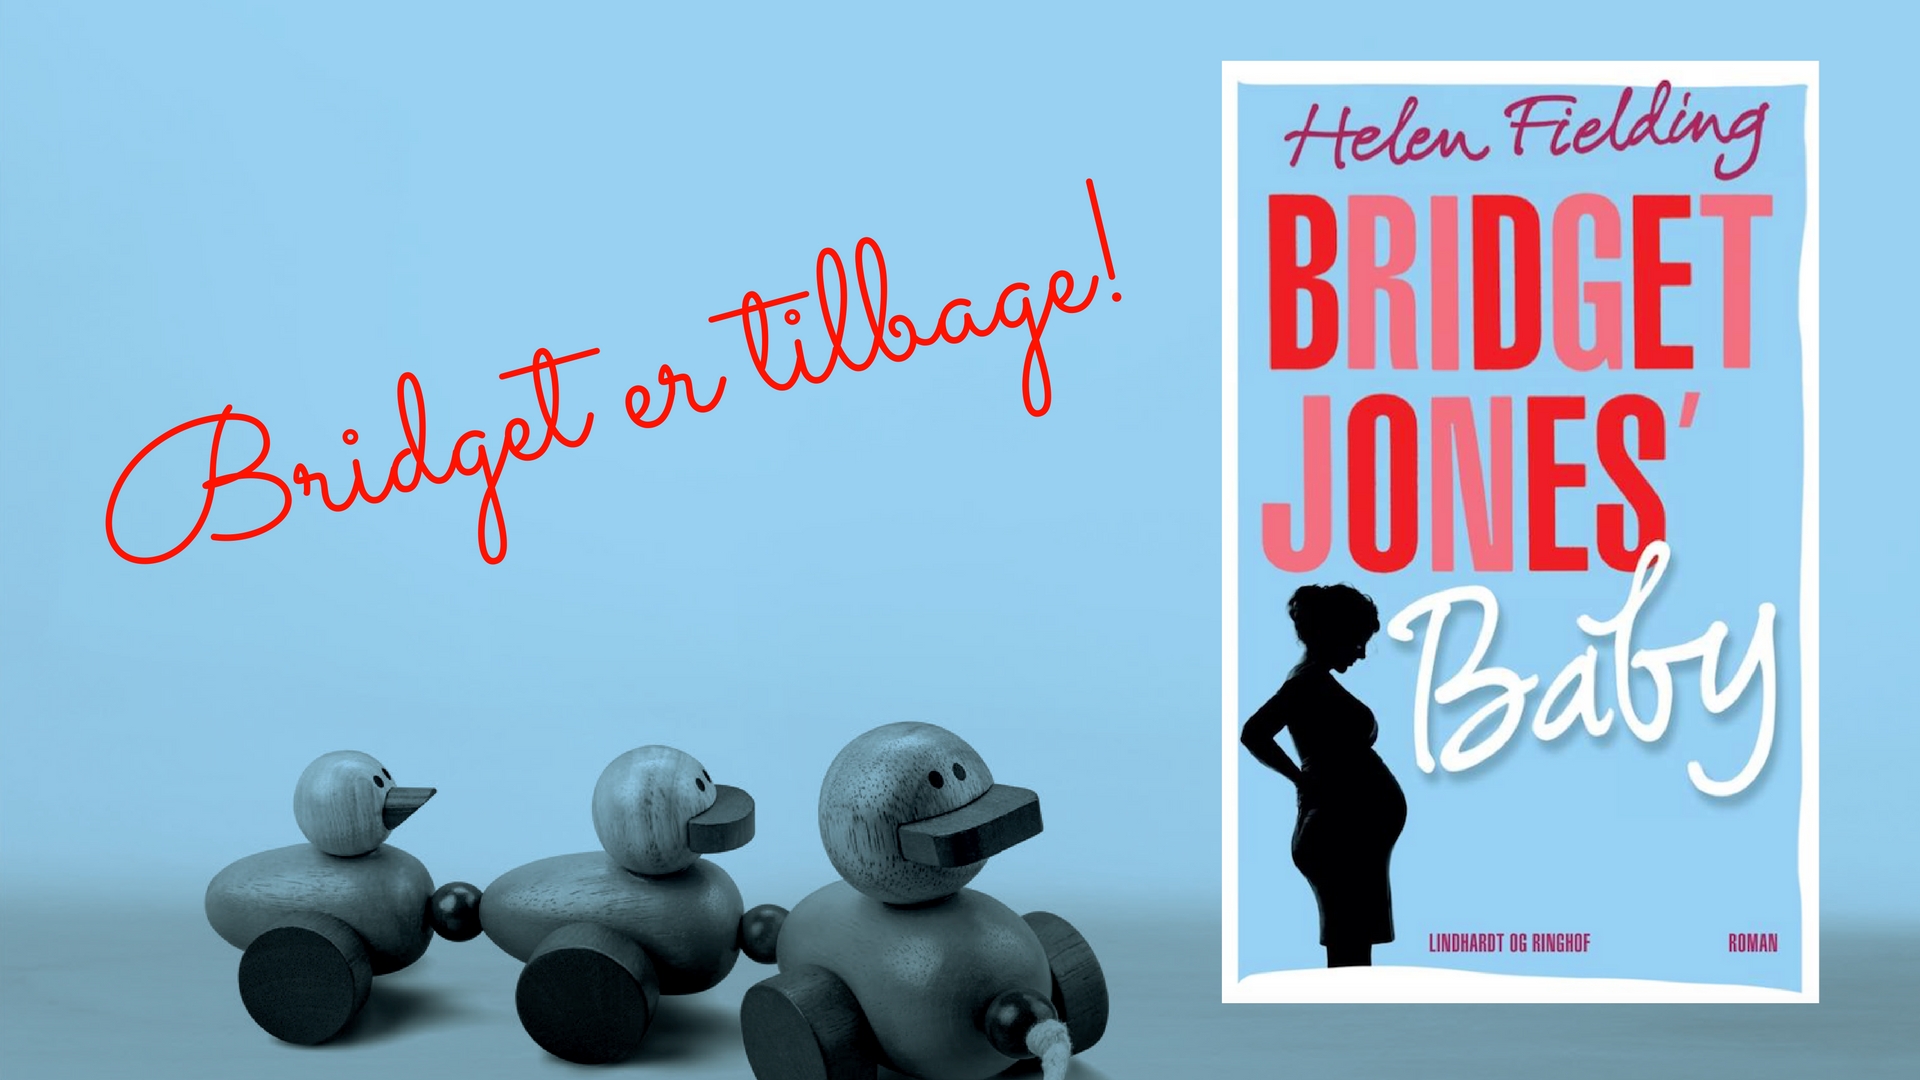 Bridget Jones – nu med baby!